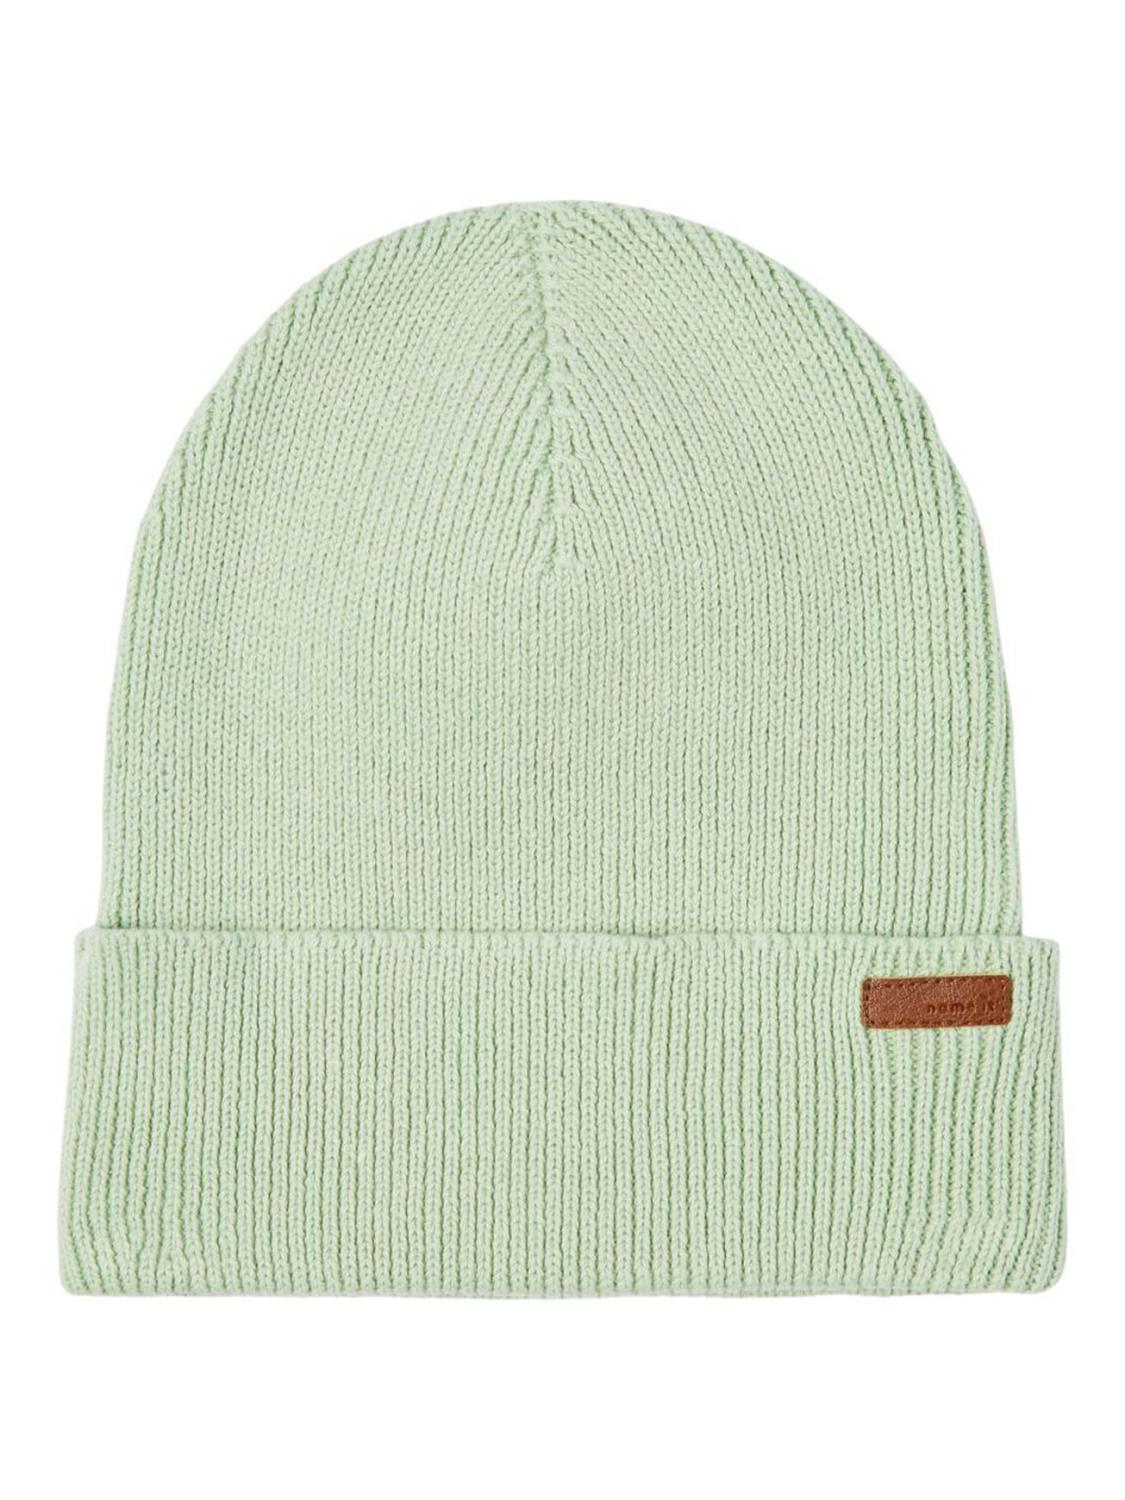 Beran Knit Hat, Mini - Subtle Green